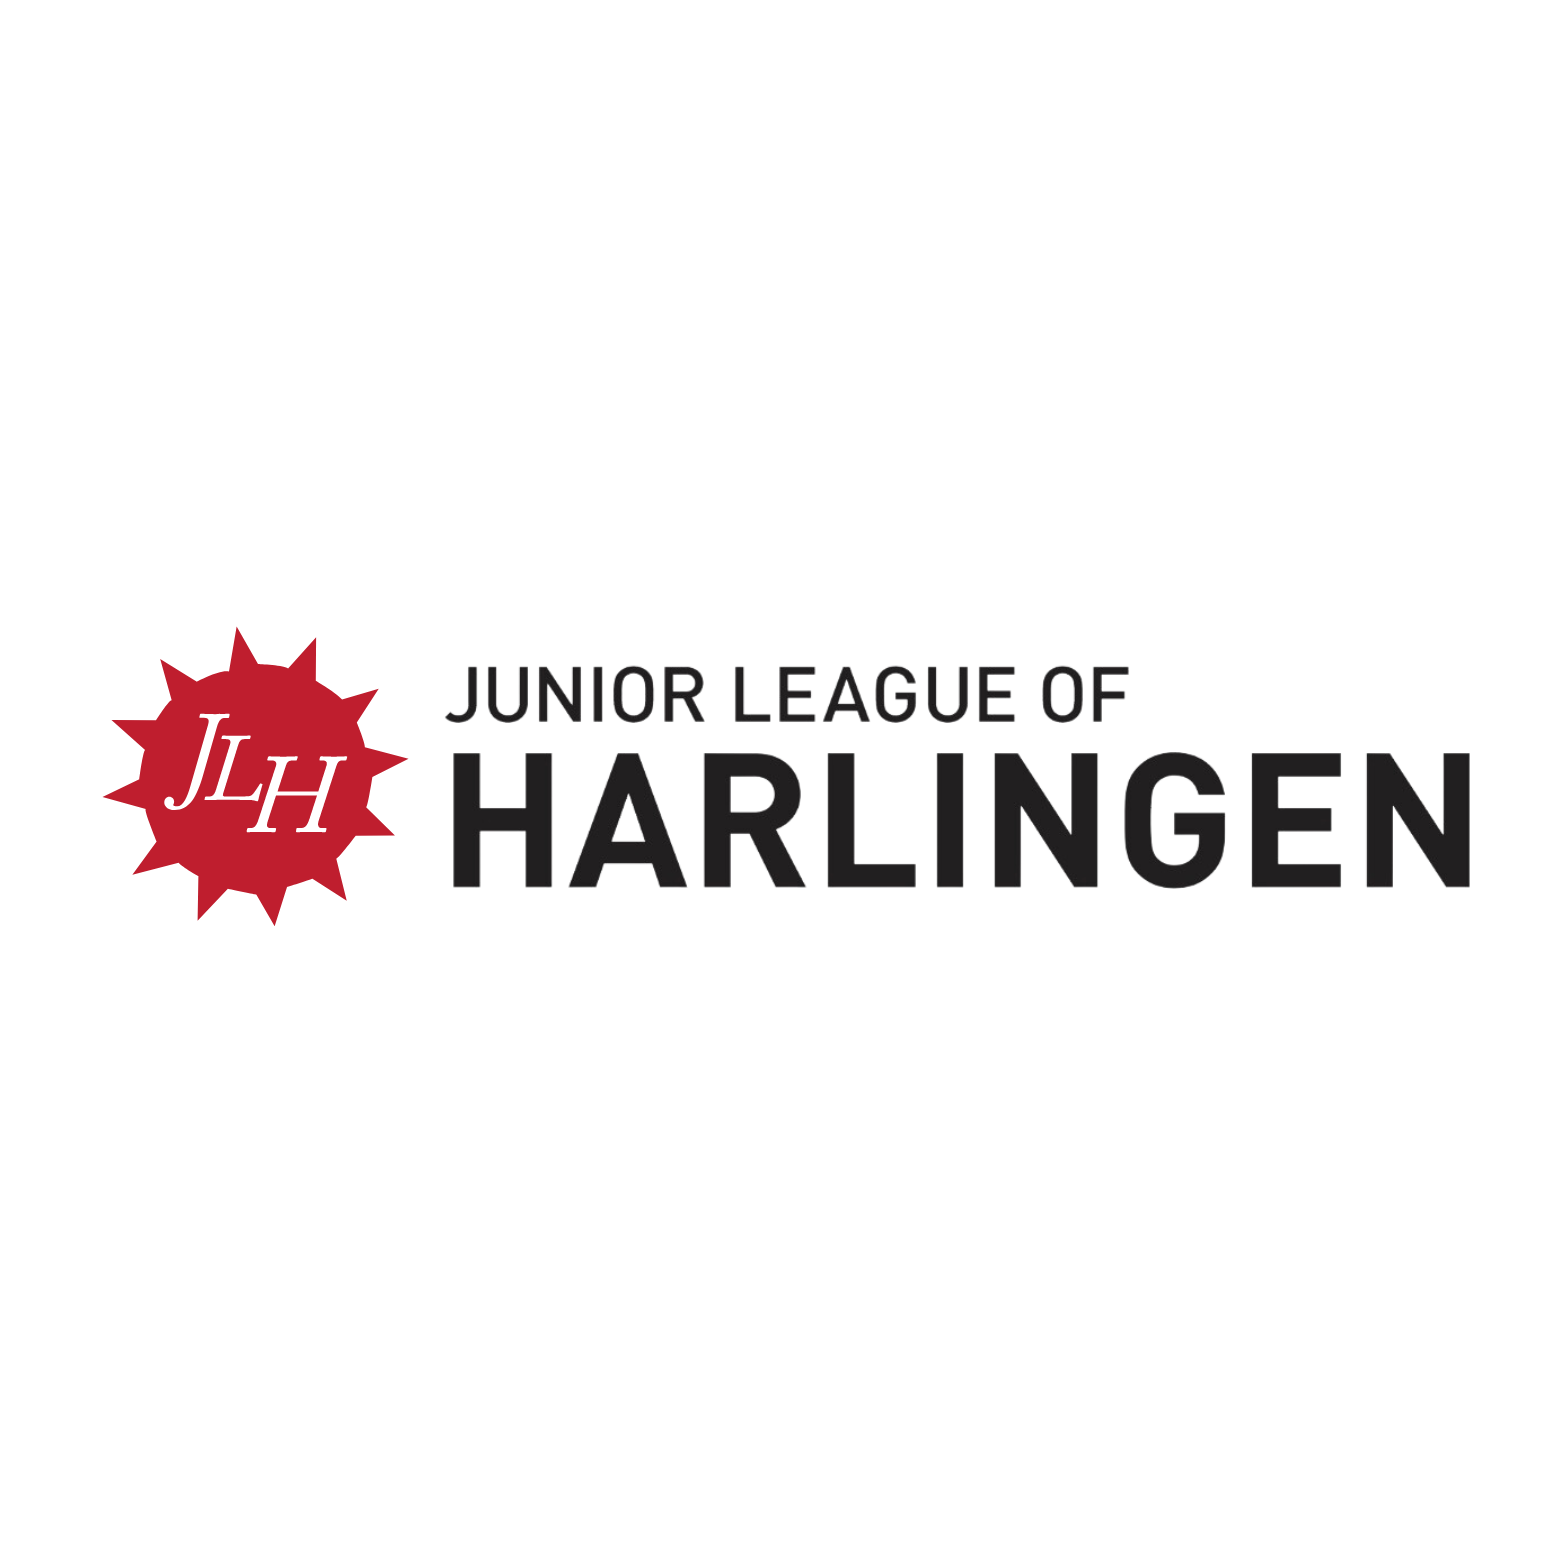 Junior League of Harlingen